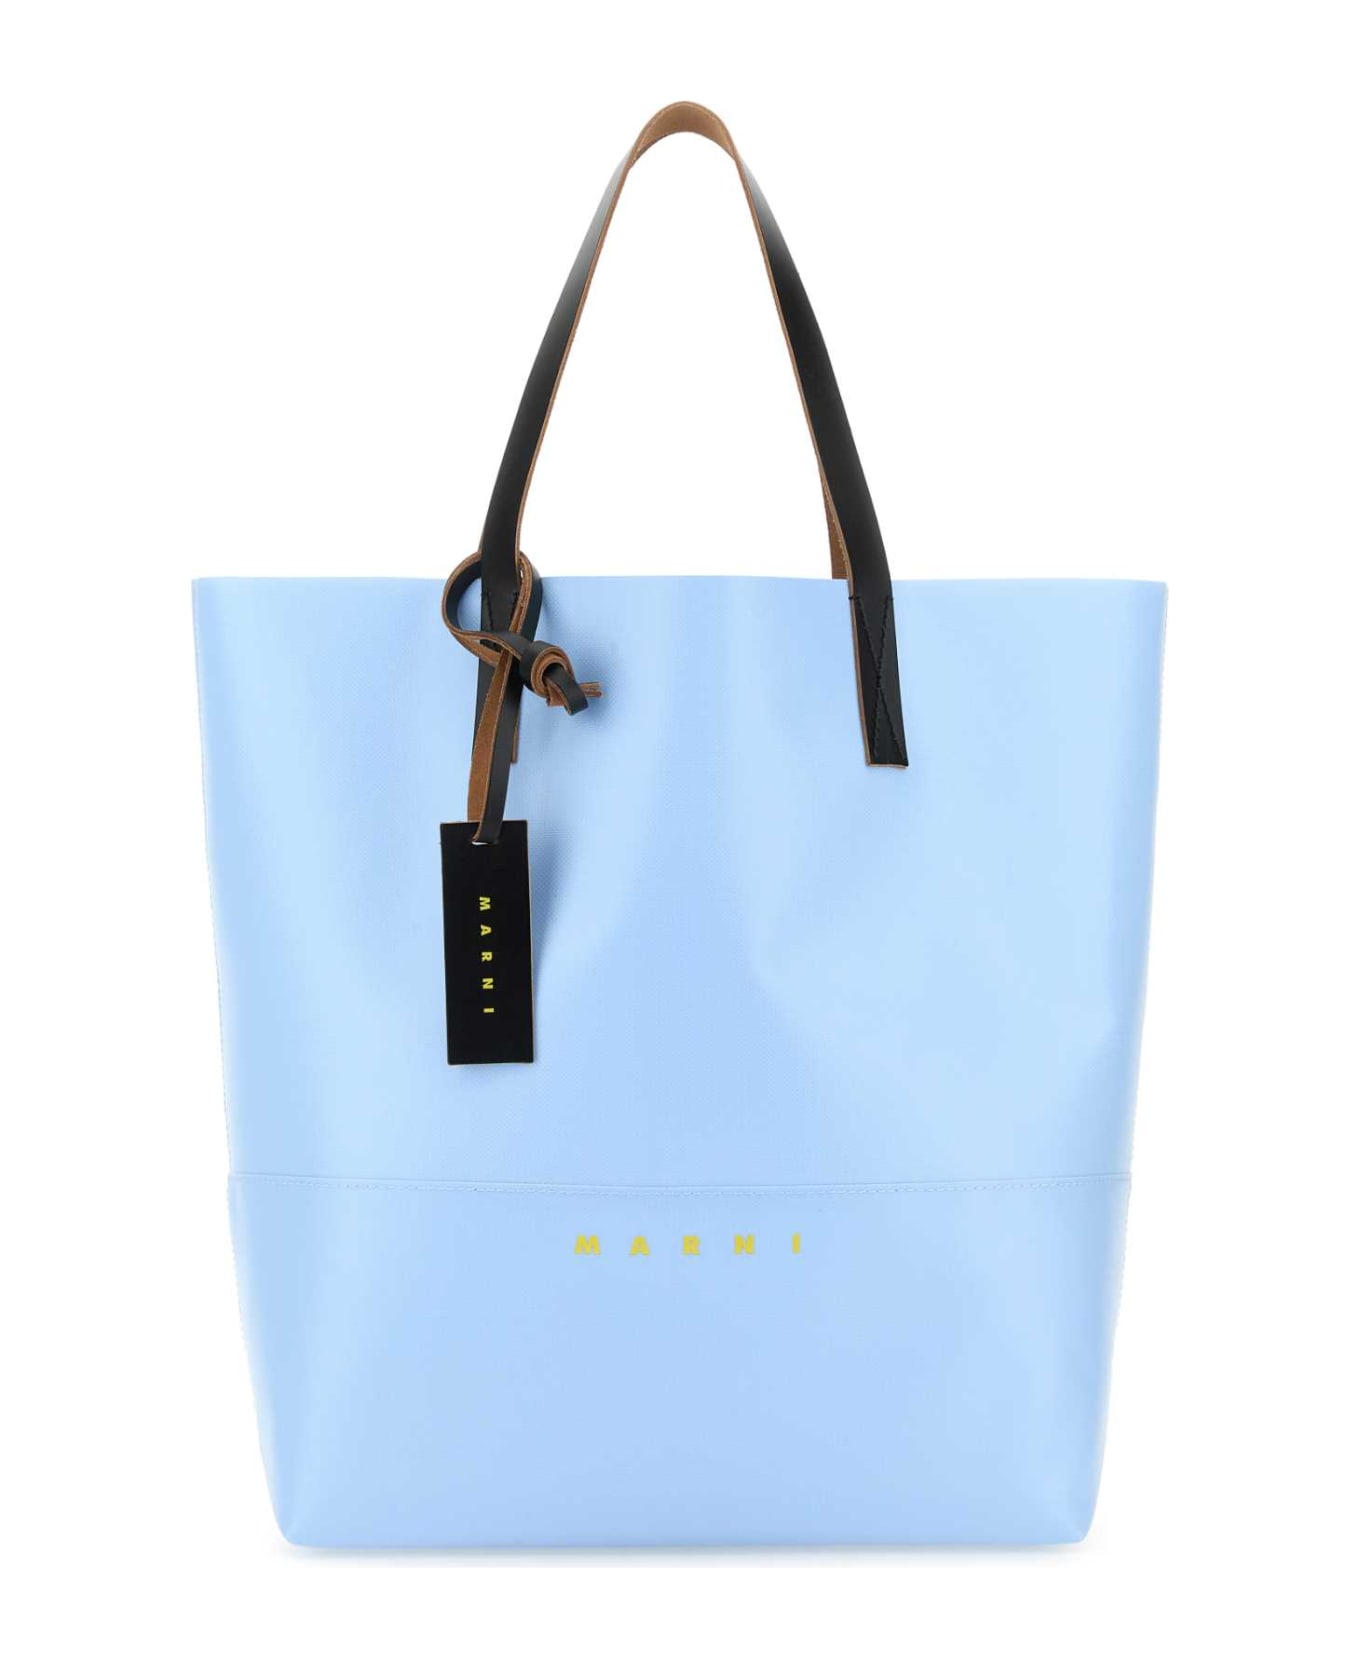 Marni Light Blue Pvc Tribeca Shopping Bag - LIGHTBLUE トートバッグ